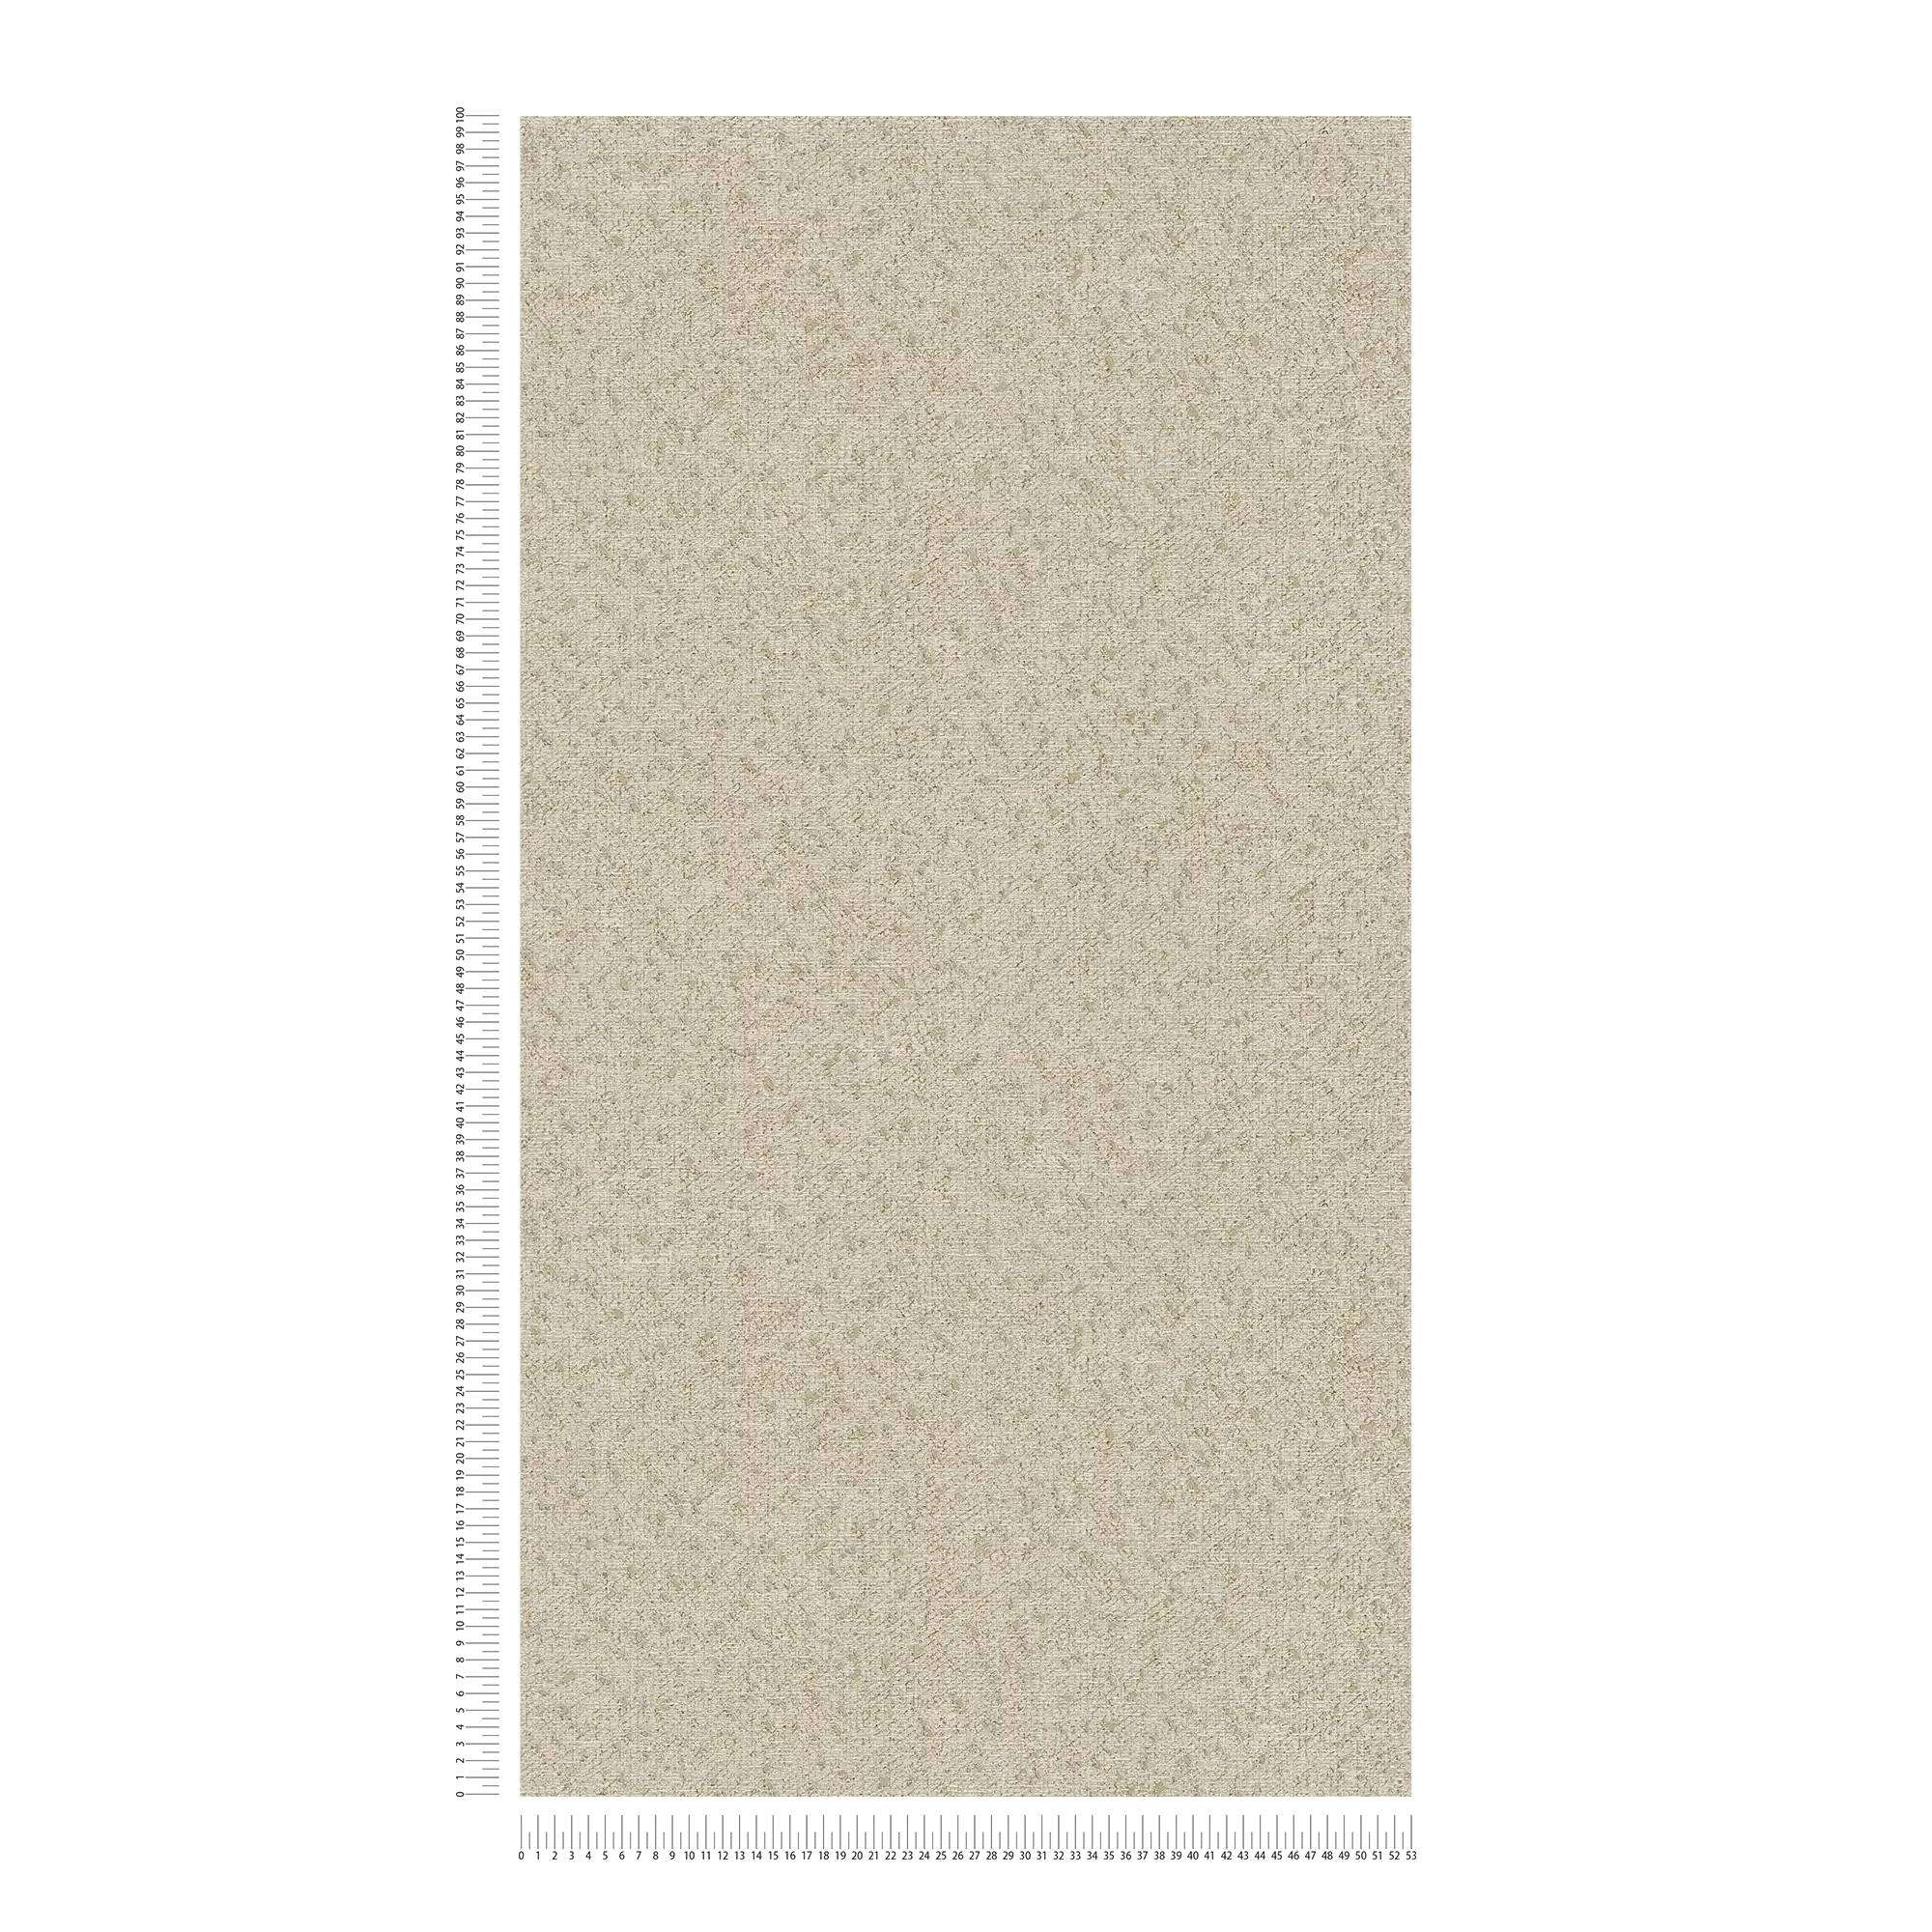             Carta da parati con struttura tessile e accenti metallici - beige, grigio
        